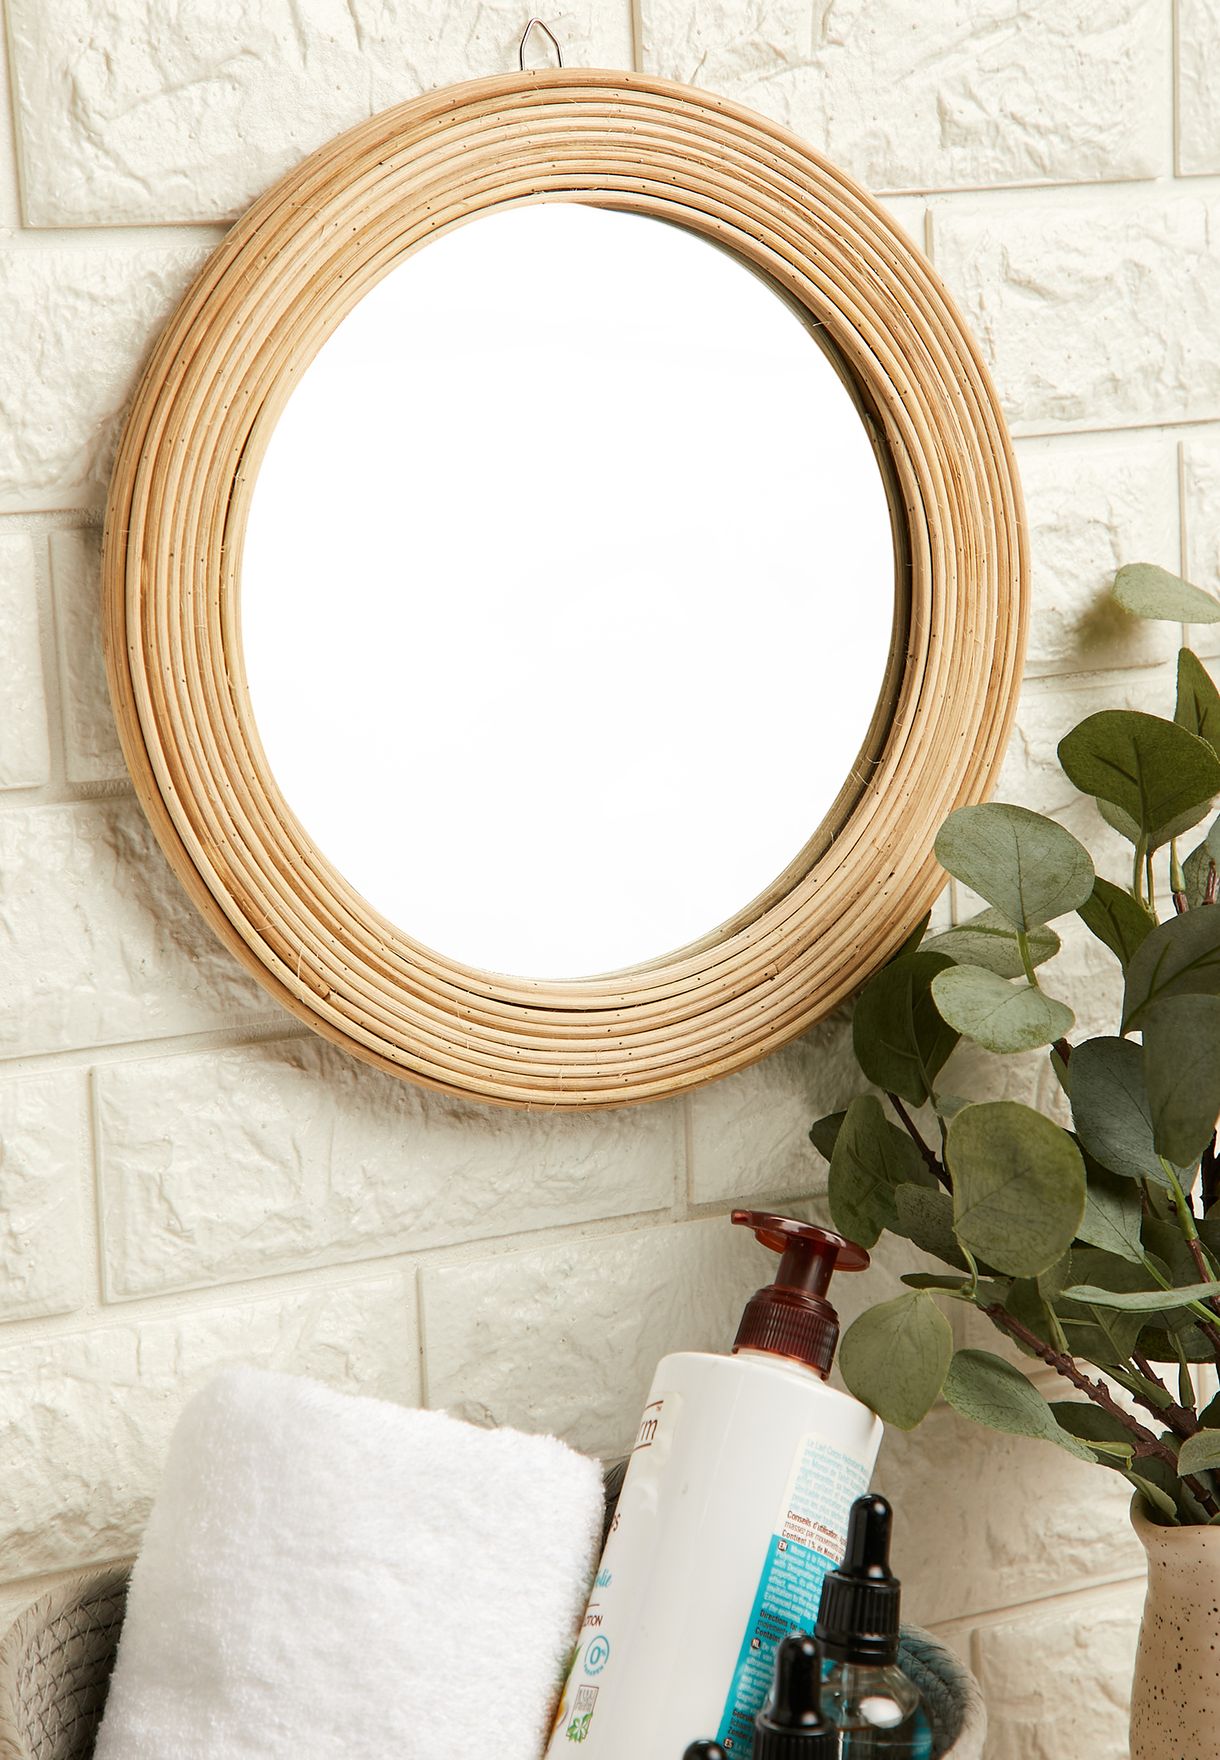 مرآة مستديرة مزينة بحبال خشبية